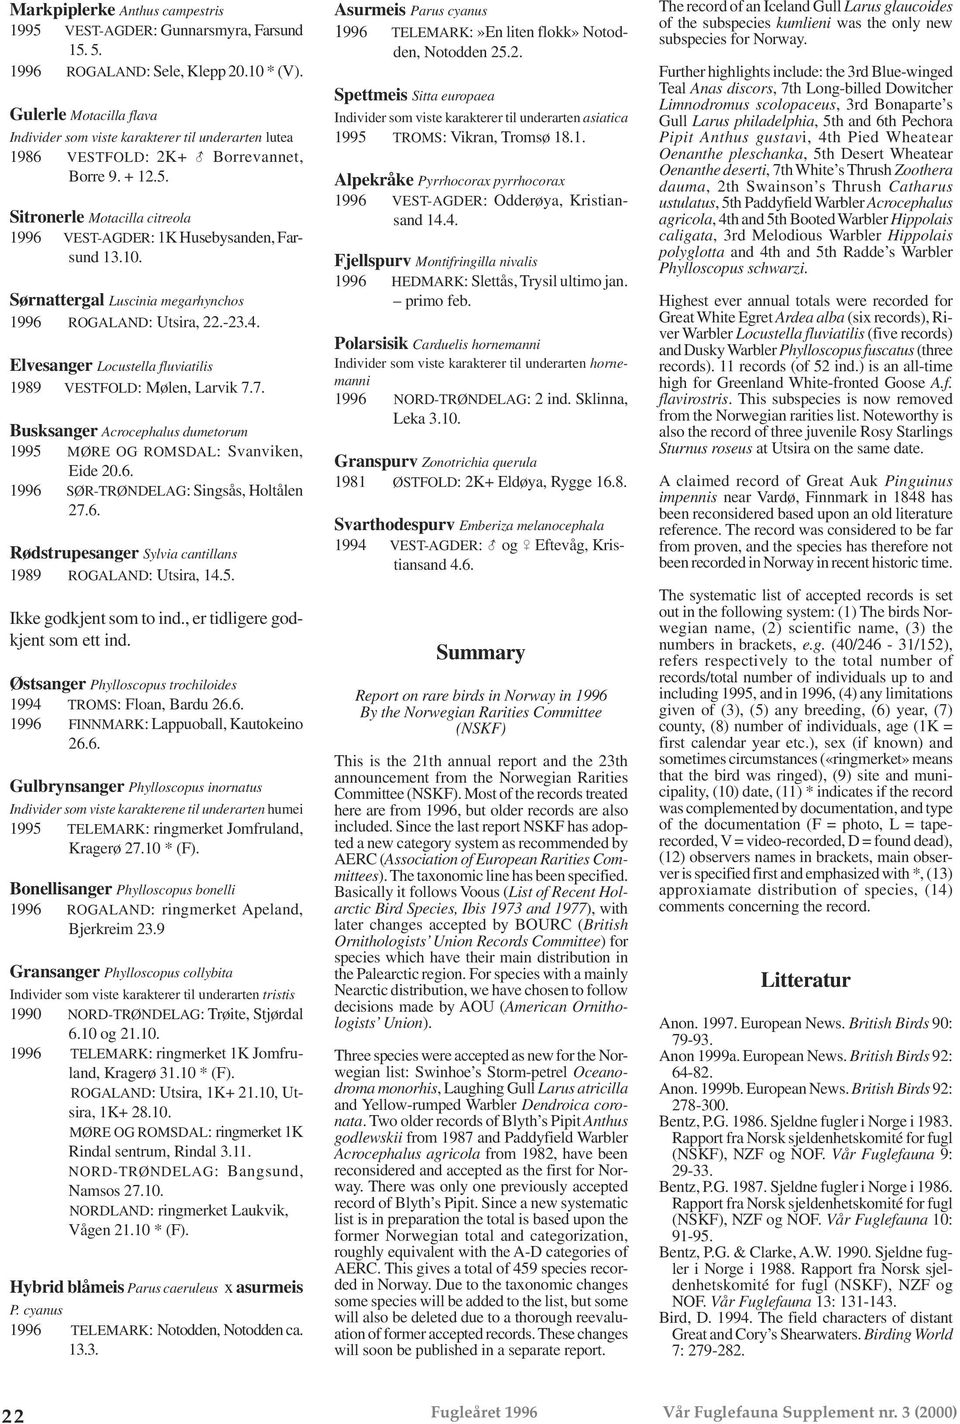 Sitronerle Motacilla citreola 1996 VEST-AGDER: 1K Husebysanden, Farsund 13.10. Sørnattergal Luscinia megarhynchos 1996 ROGALAND: Utsira, 22.-23.4.